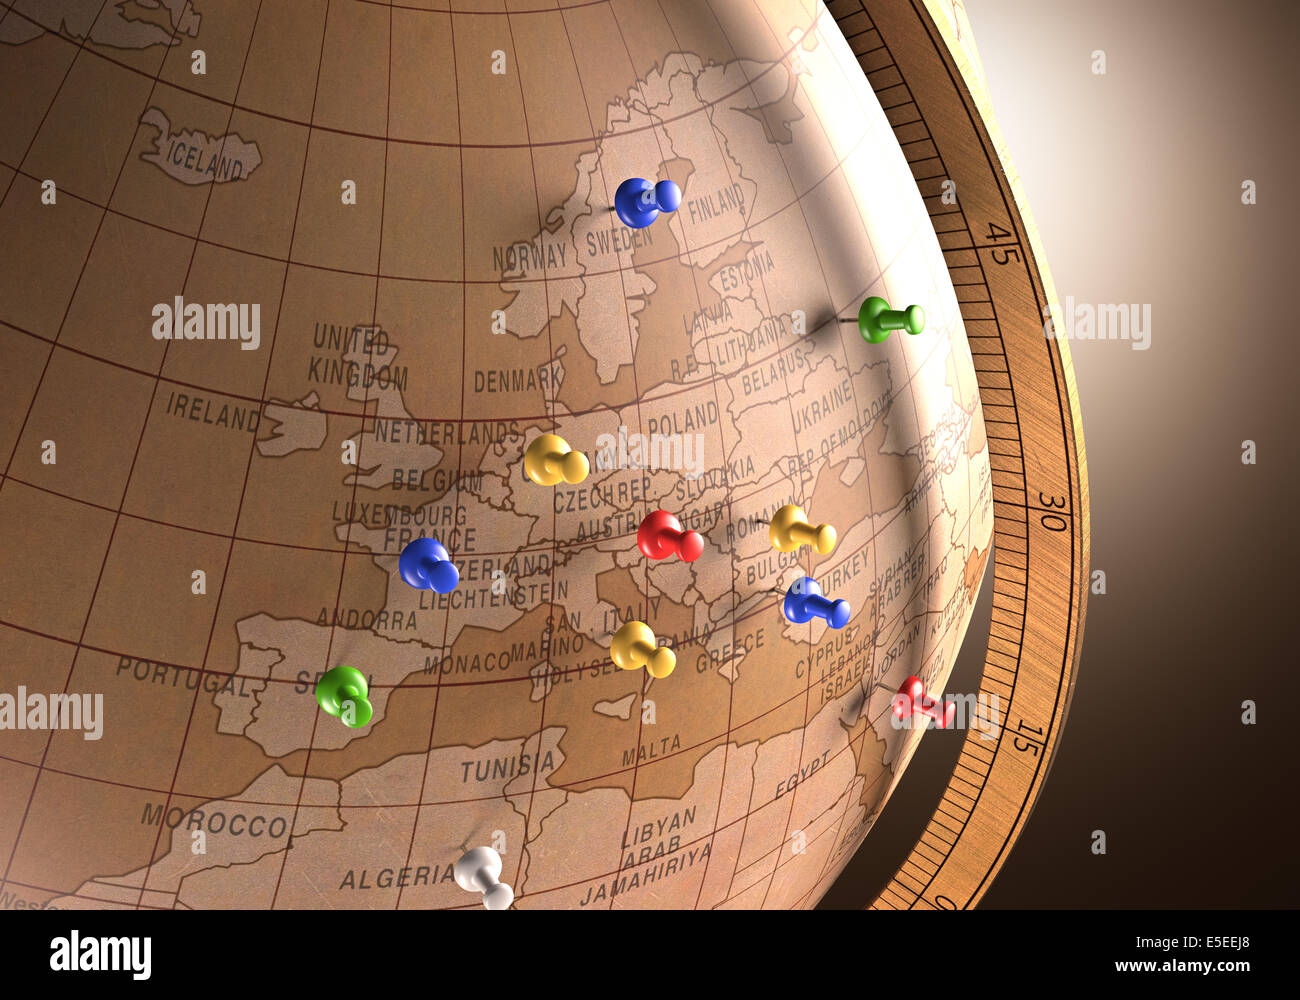 Antiker Globus mit Nägeln, die Kennzeichnung der Reiseroute. Stockfoto